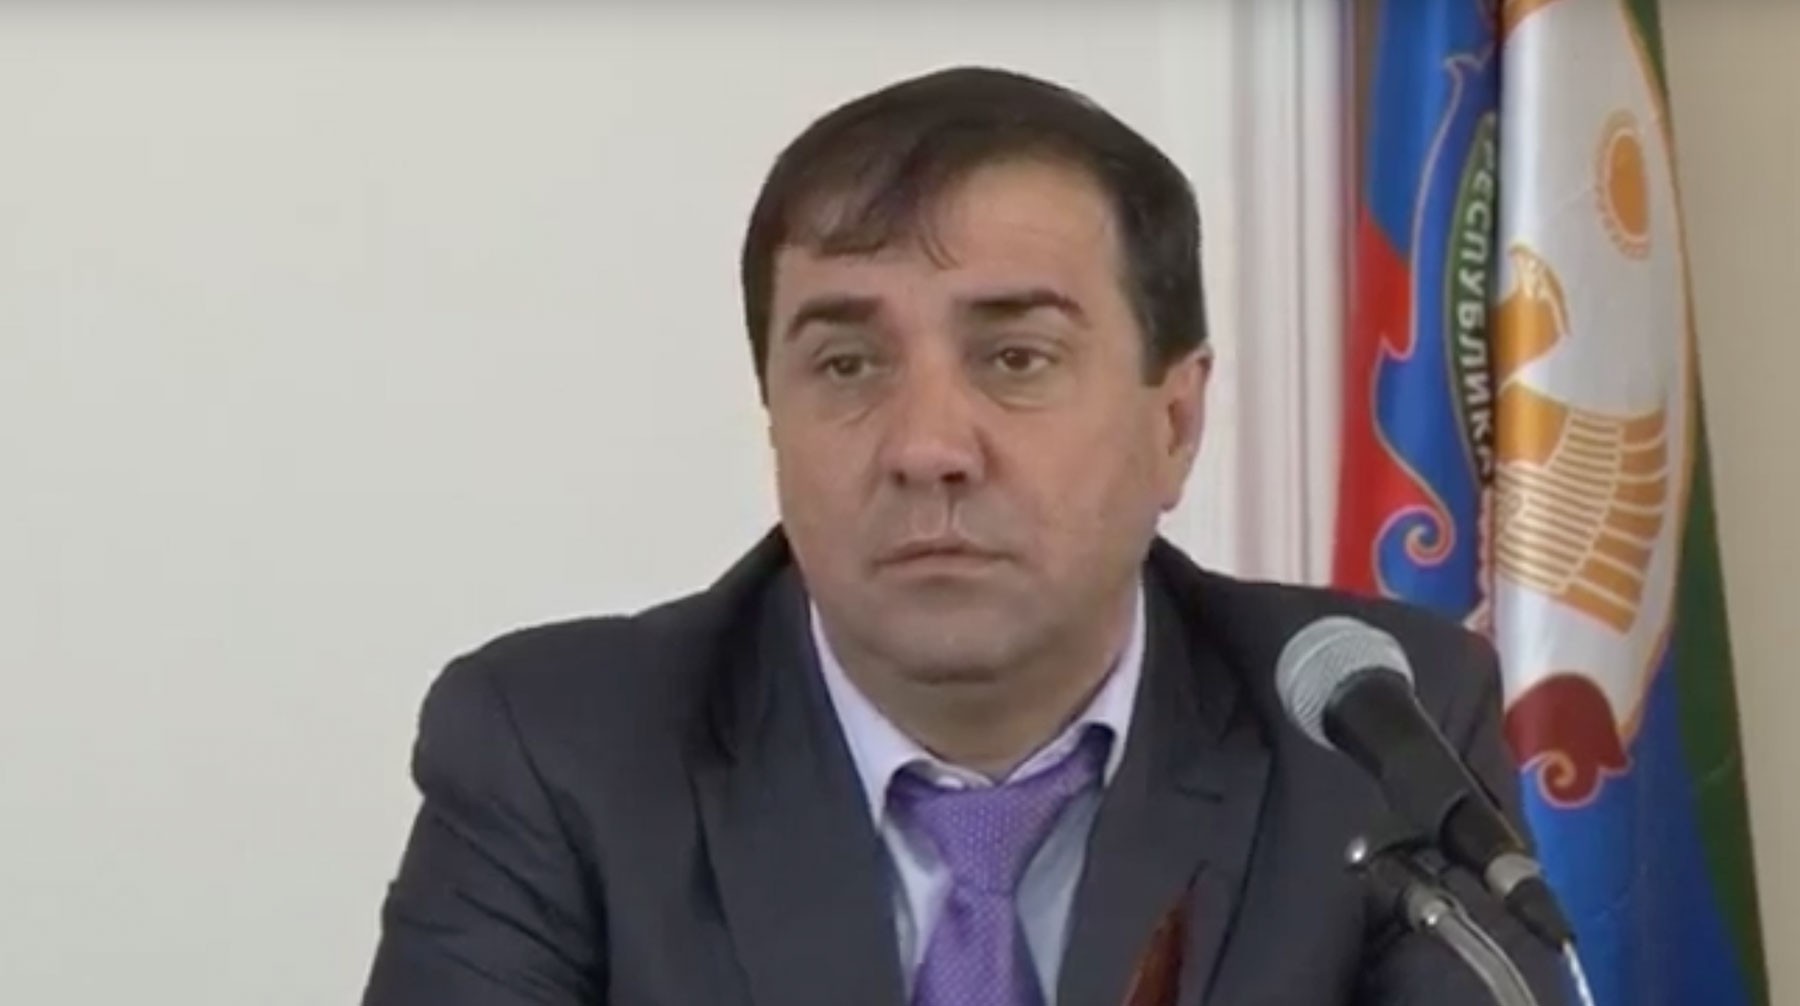 Dailystorm - Суд арестовал главу Дербентского района Дагестана до 9 июня